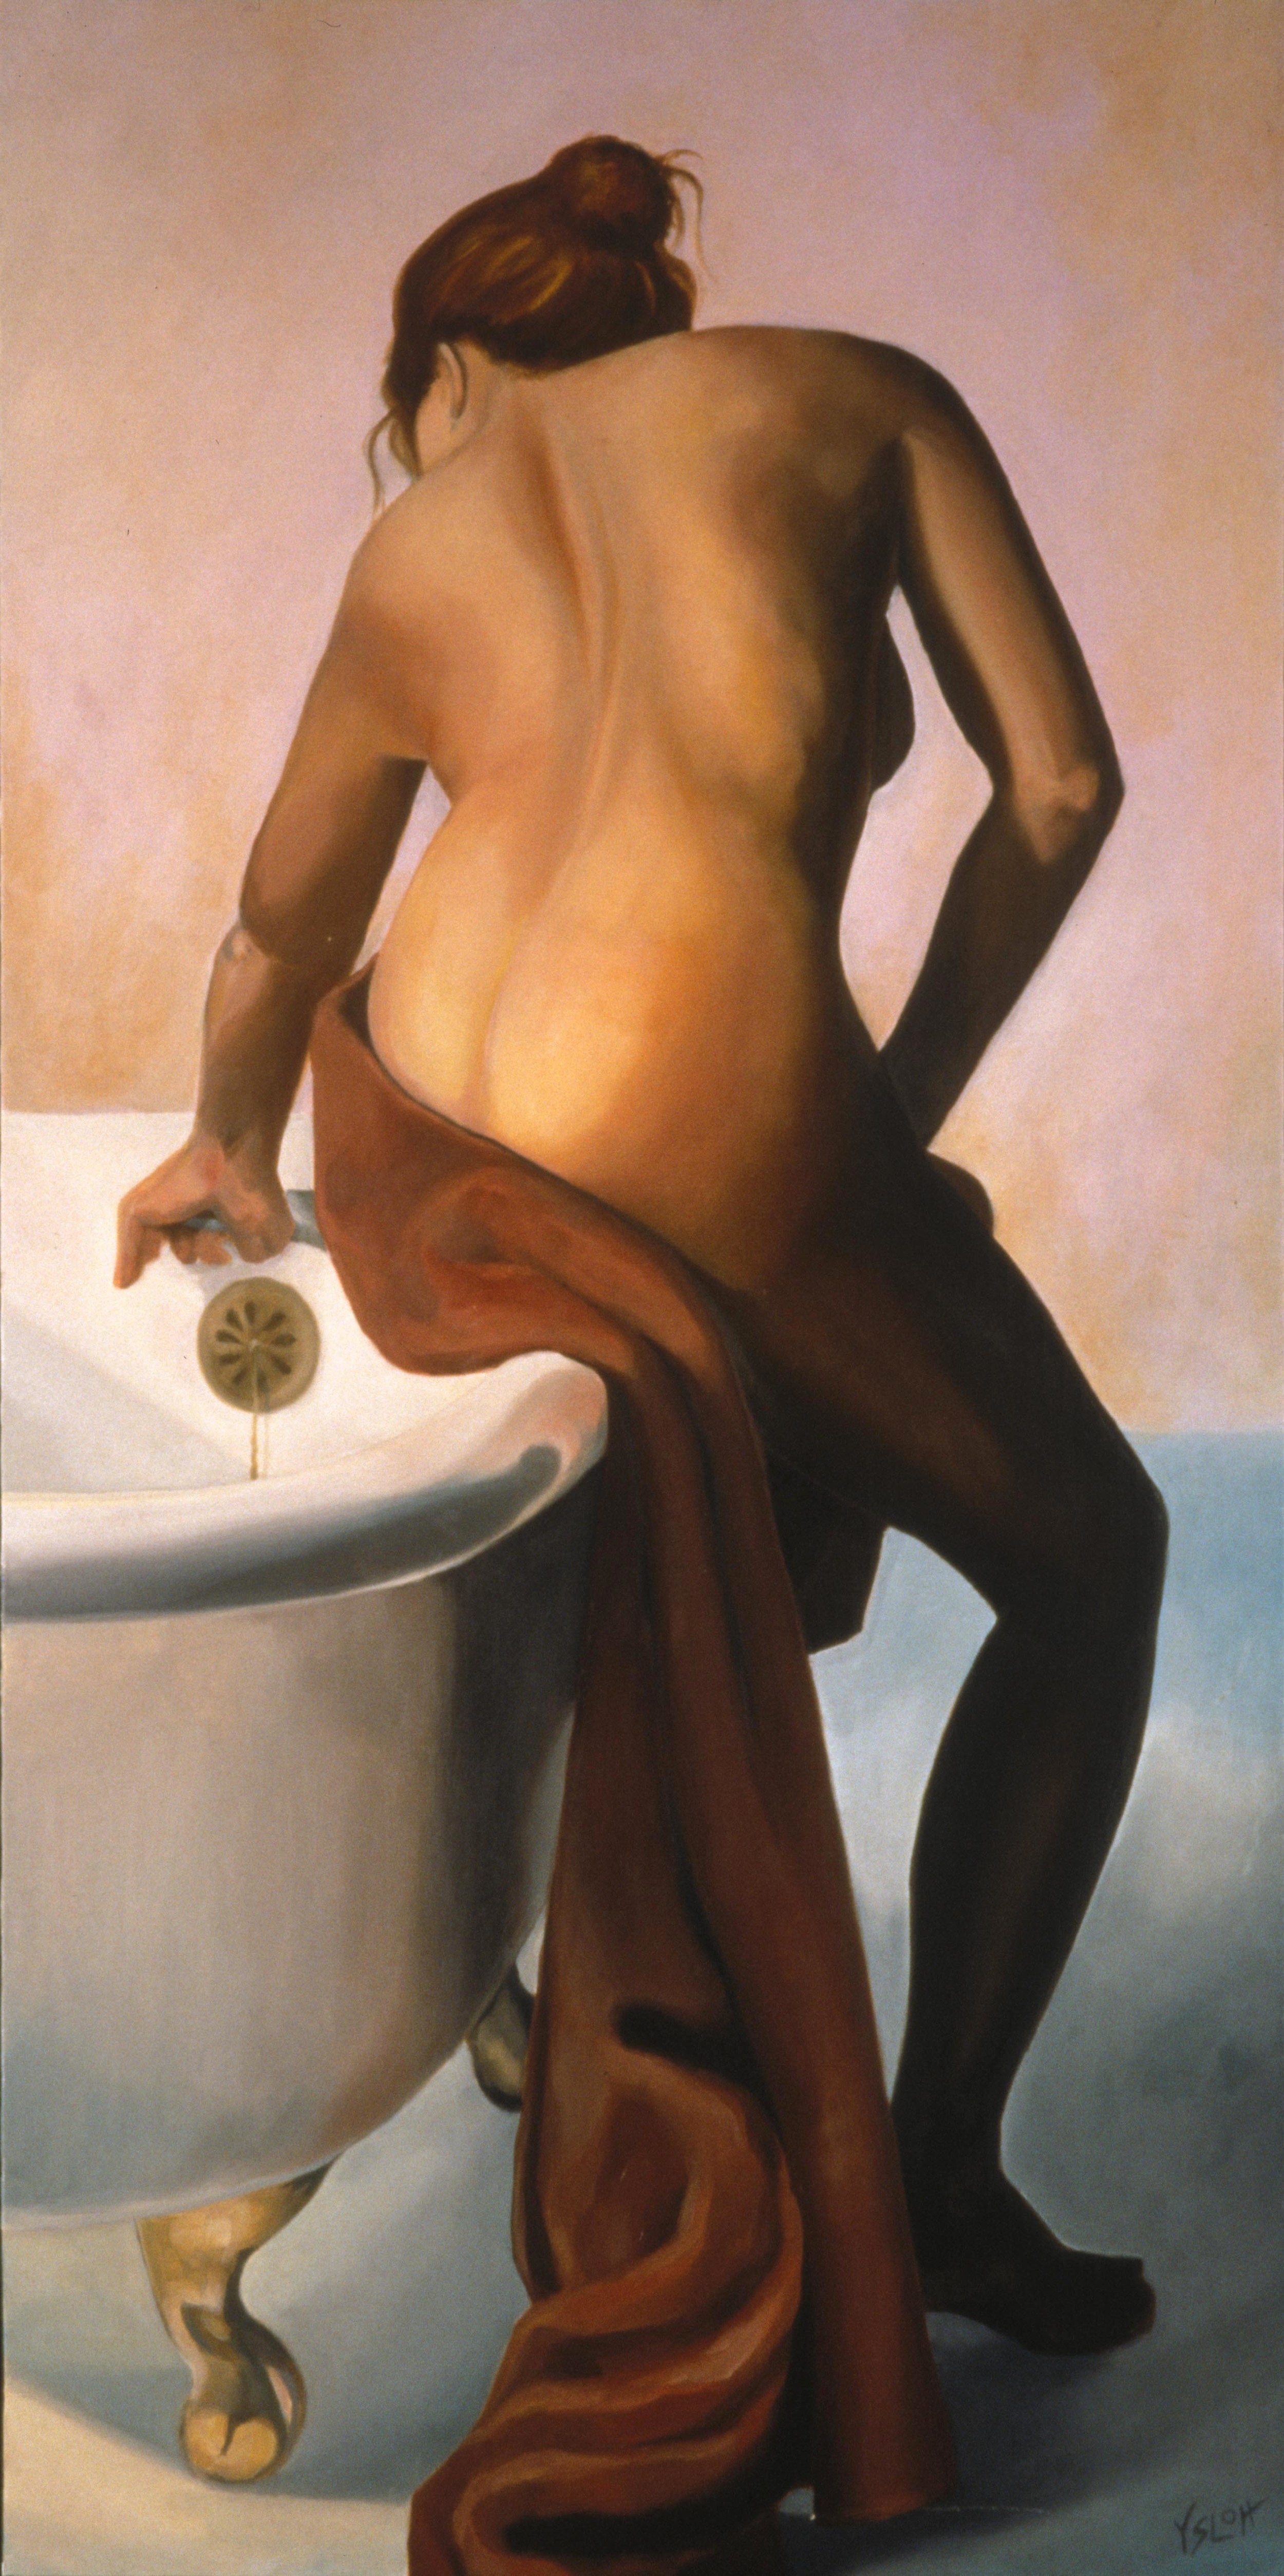   Woman Bathing   oil on canvas, 48 x 24 &nbsp; &nbsp; &nbsp; &nbsp; Sharon Brown,&nbsp;private colllection 